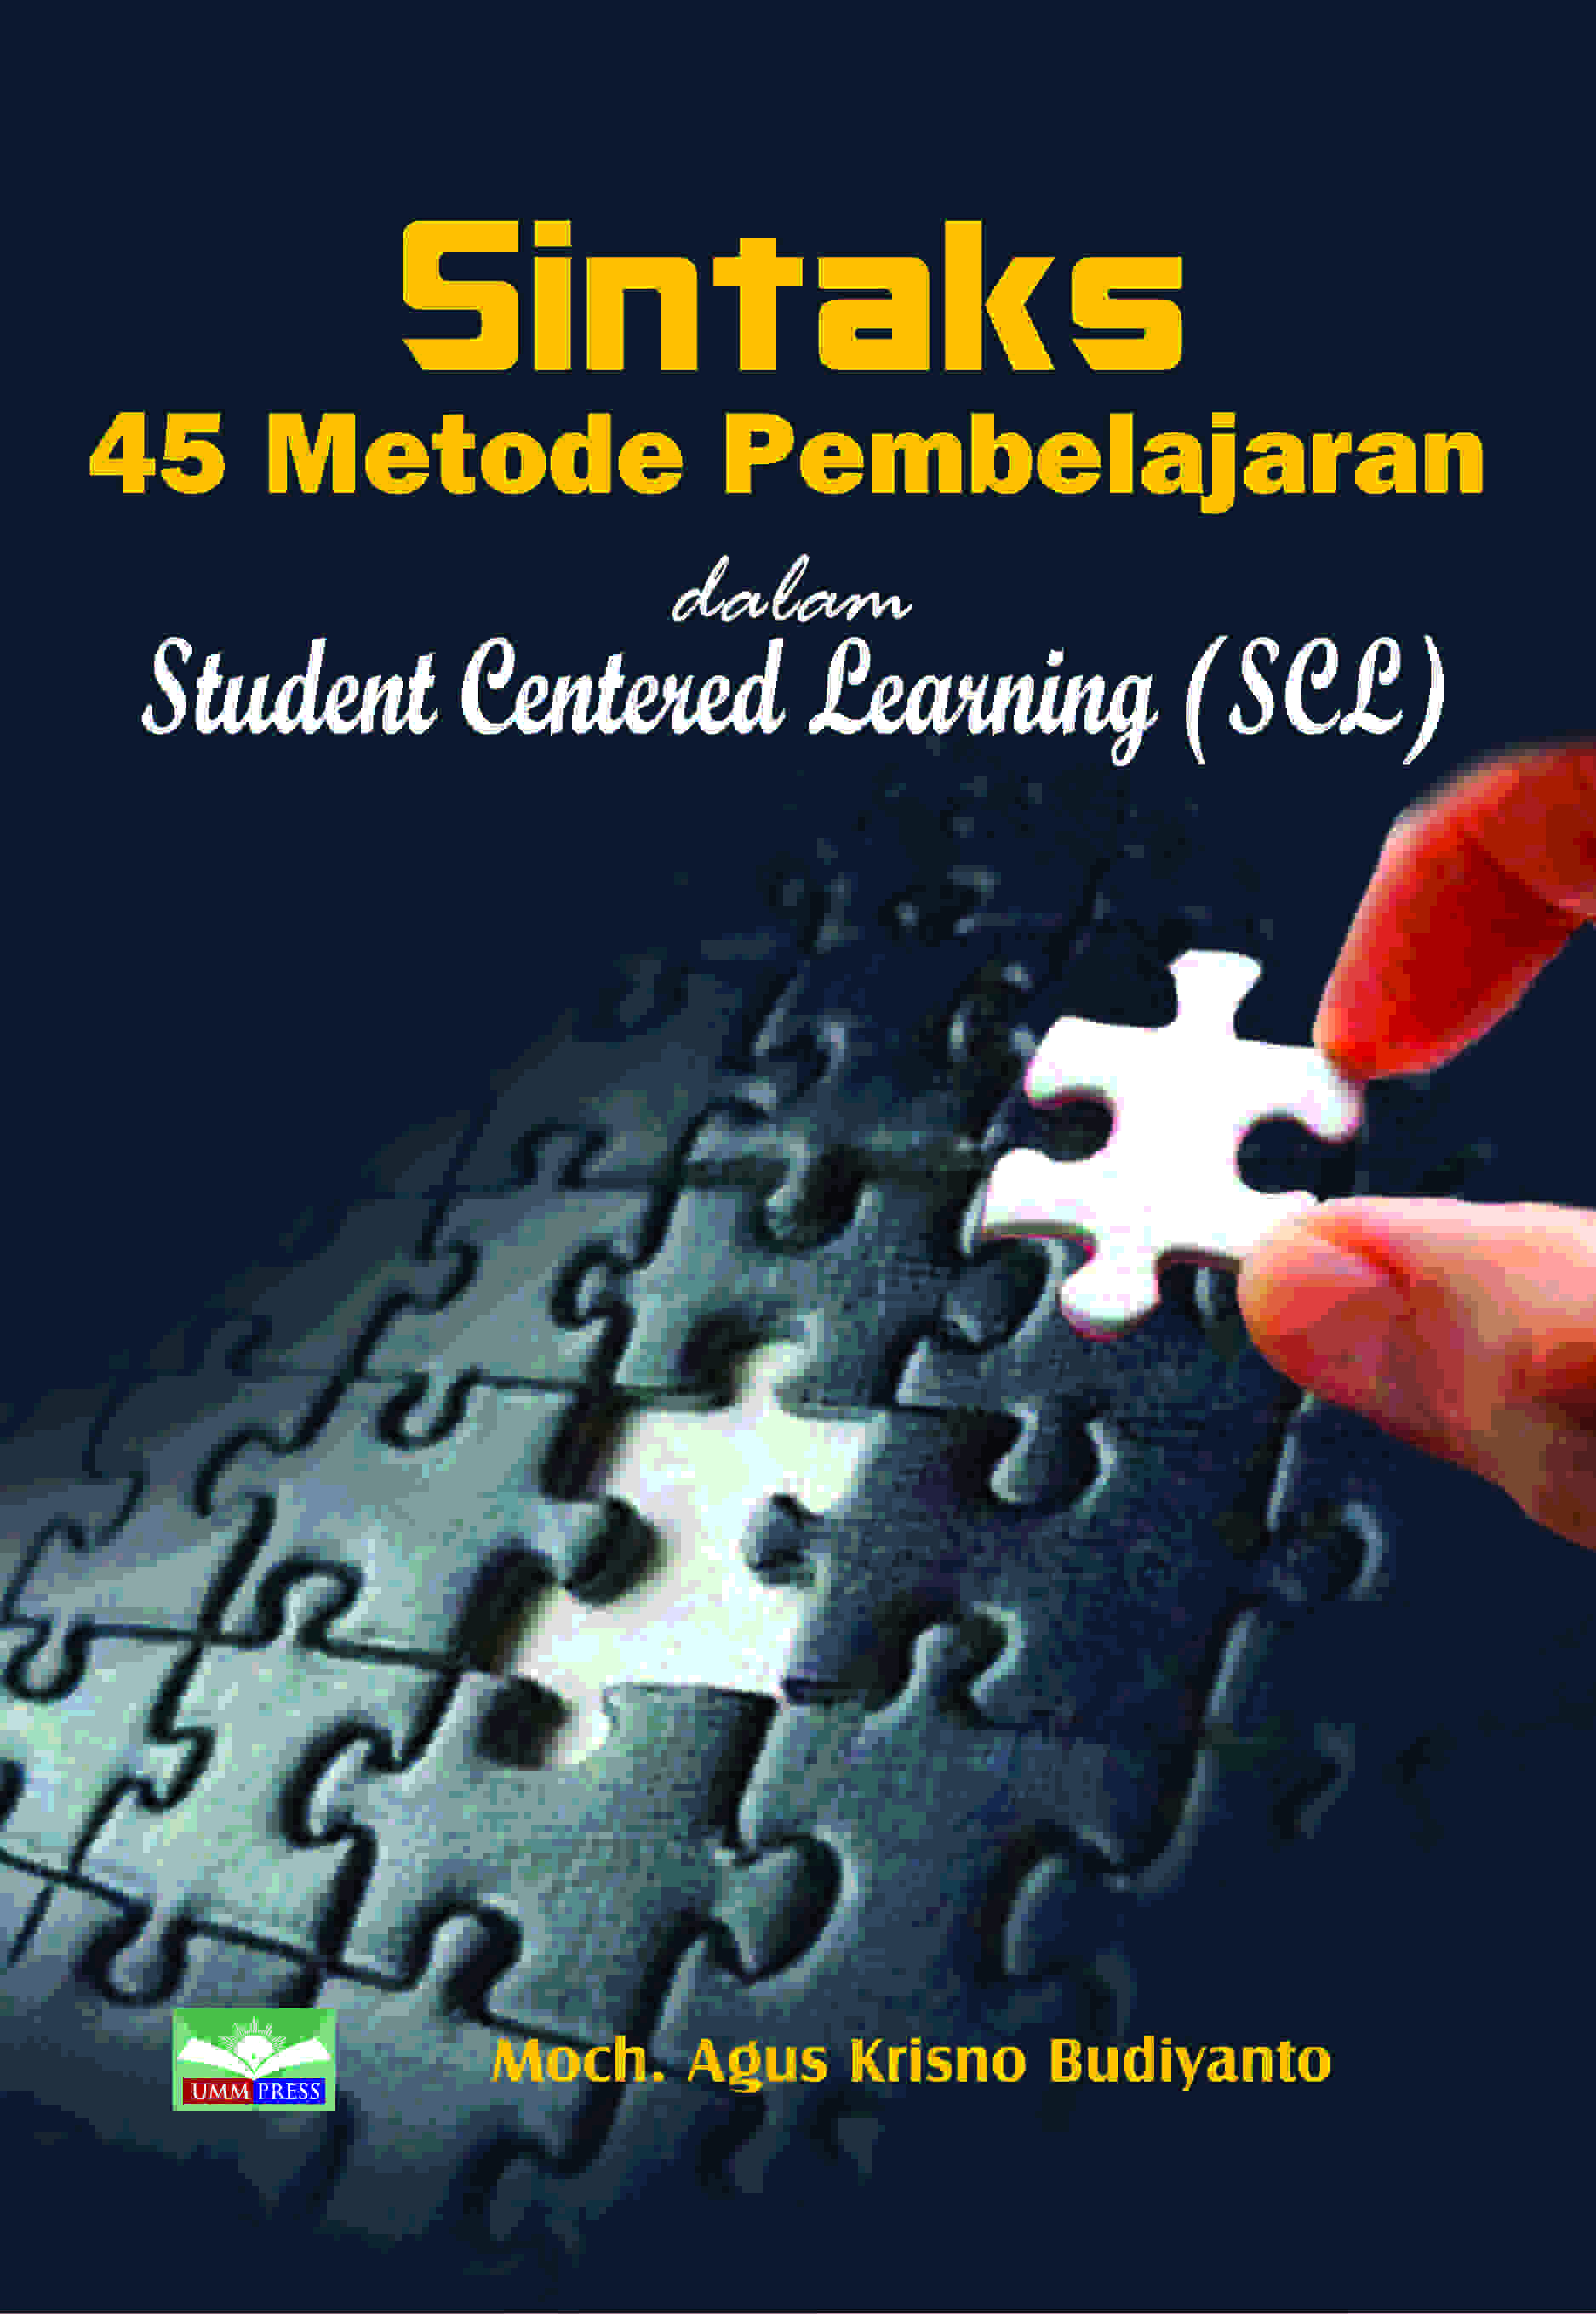 SINTAKS 45 METODE PEMBELAJARAN DALAM STUDENT CENTERED LEARNING (SCL)